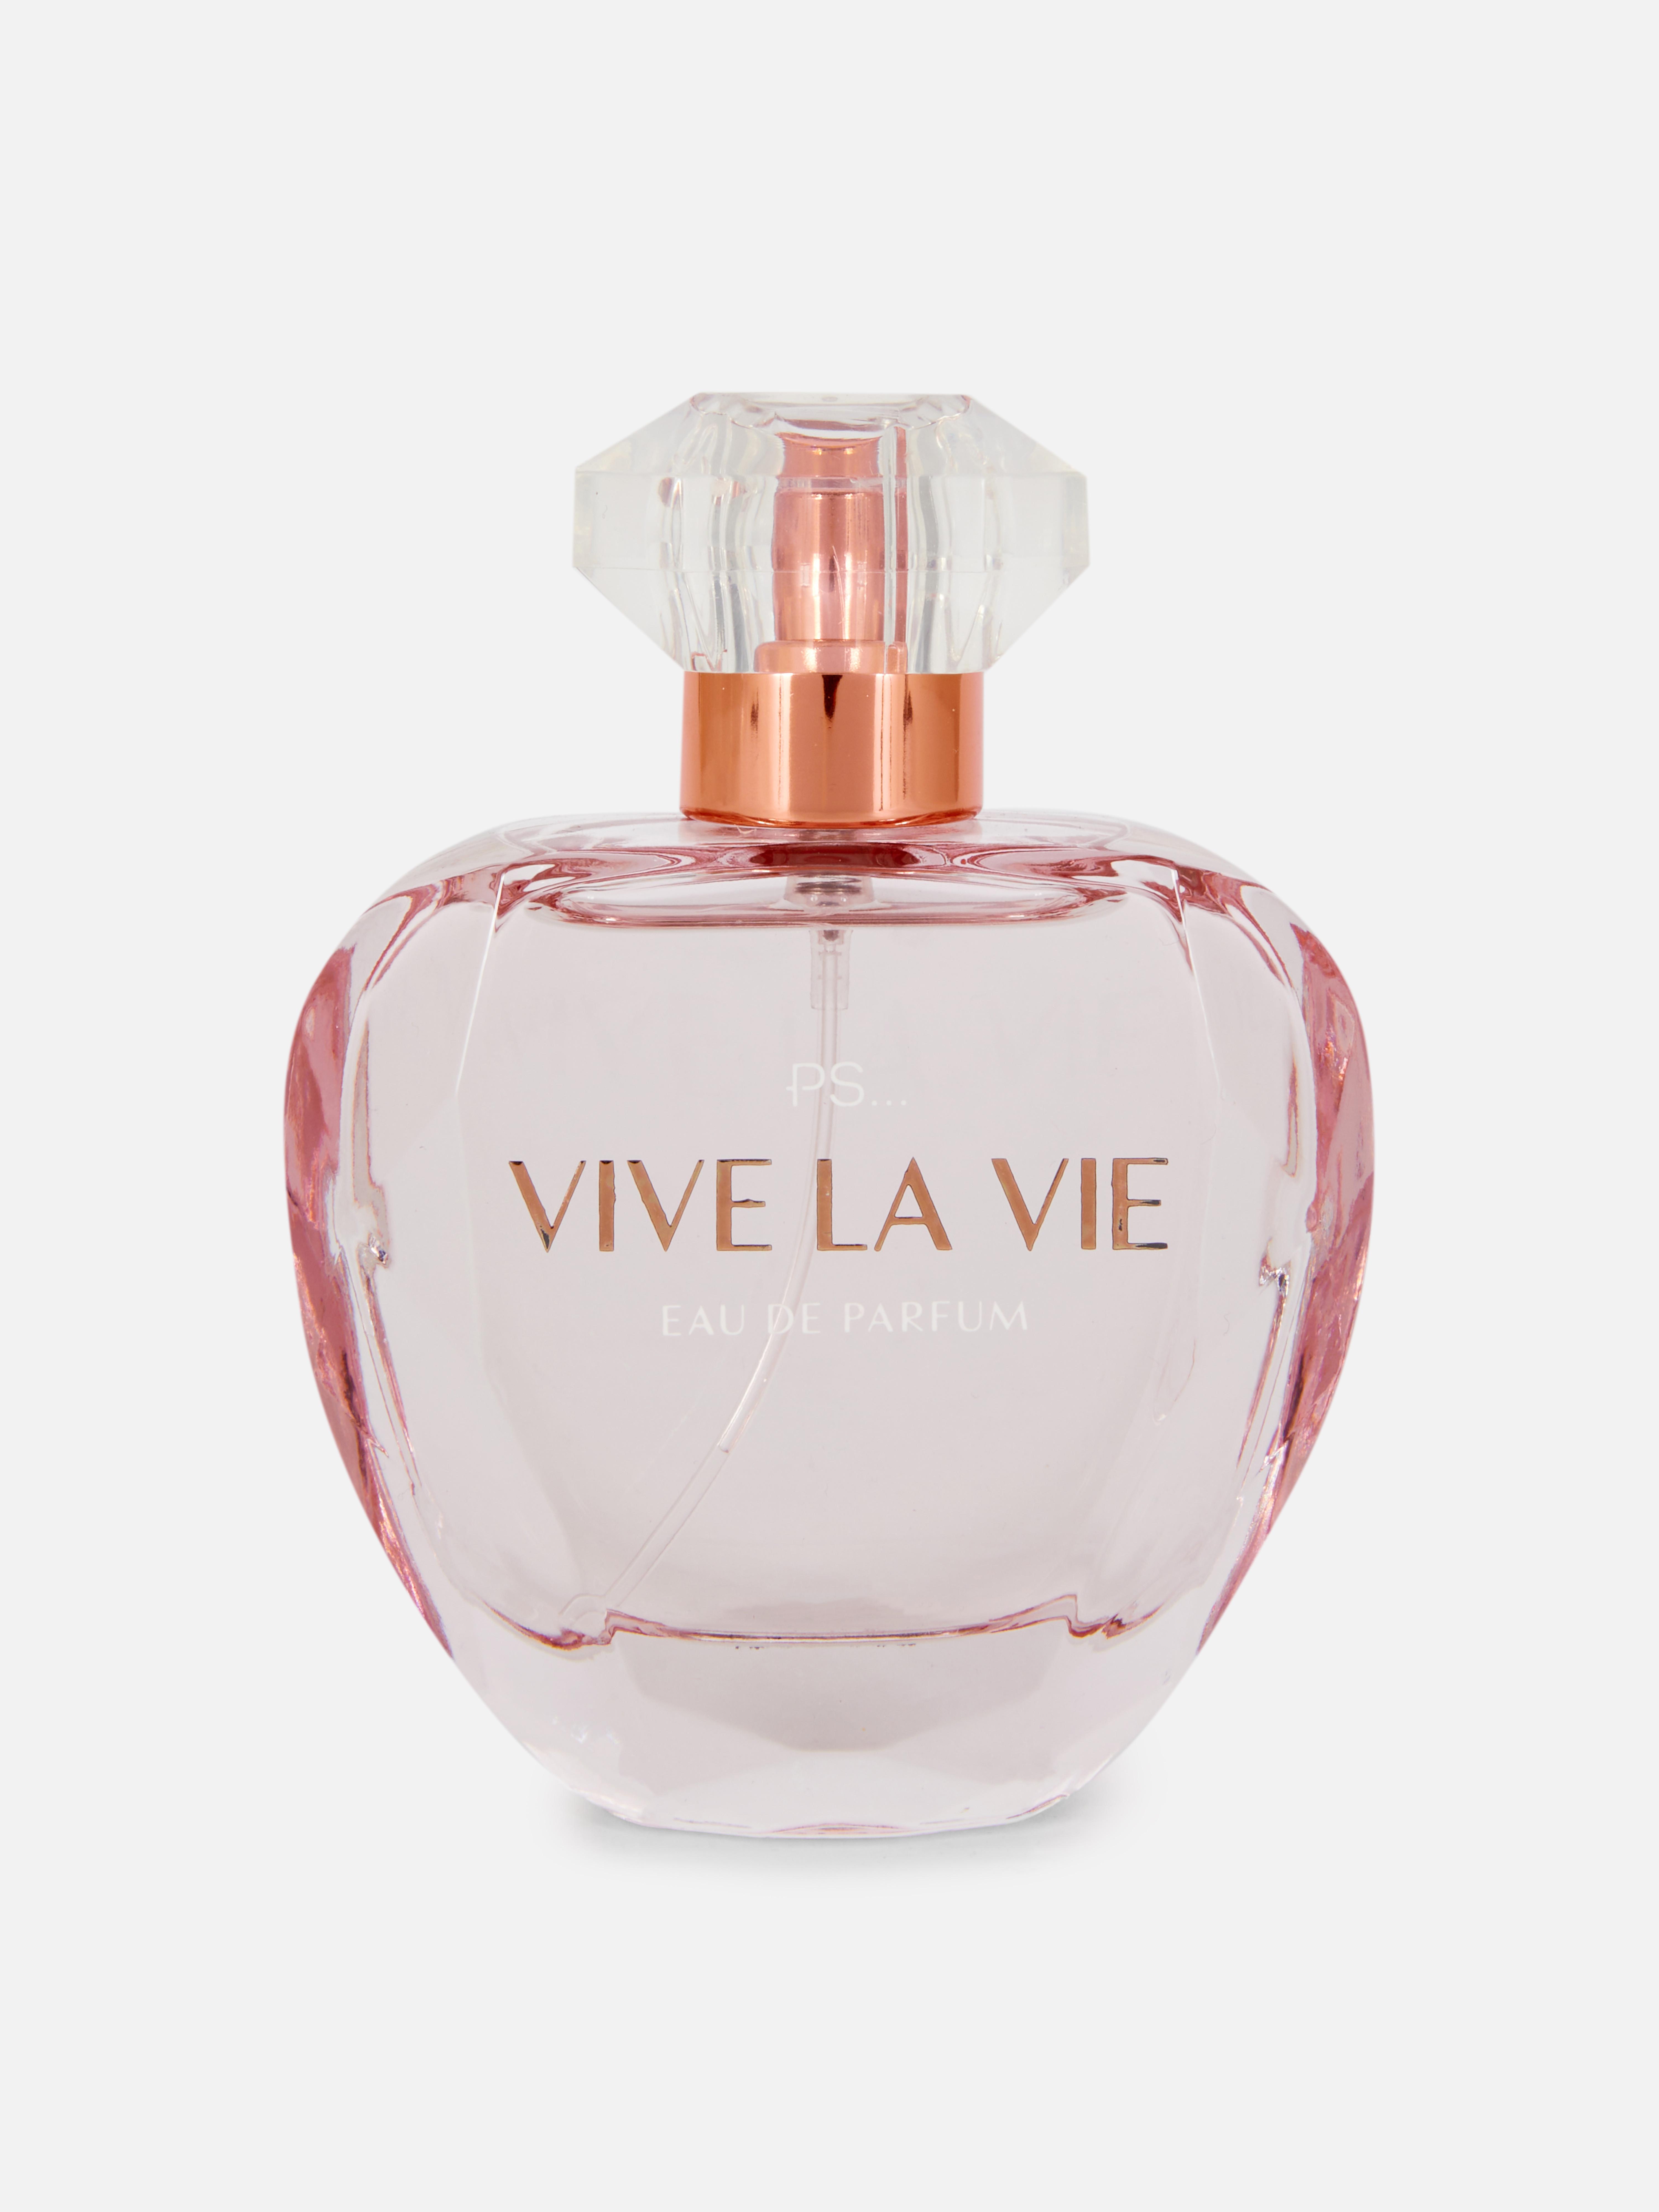 PS... Vive La Vie Eau de Parfum